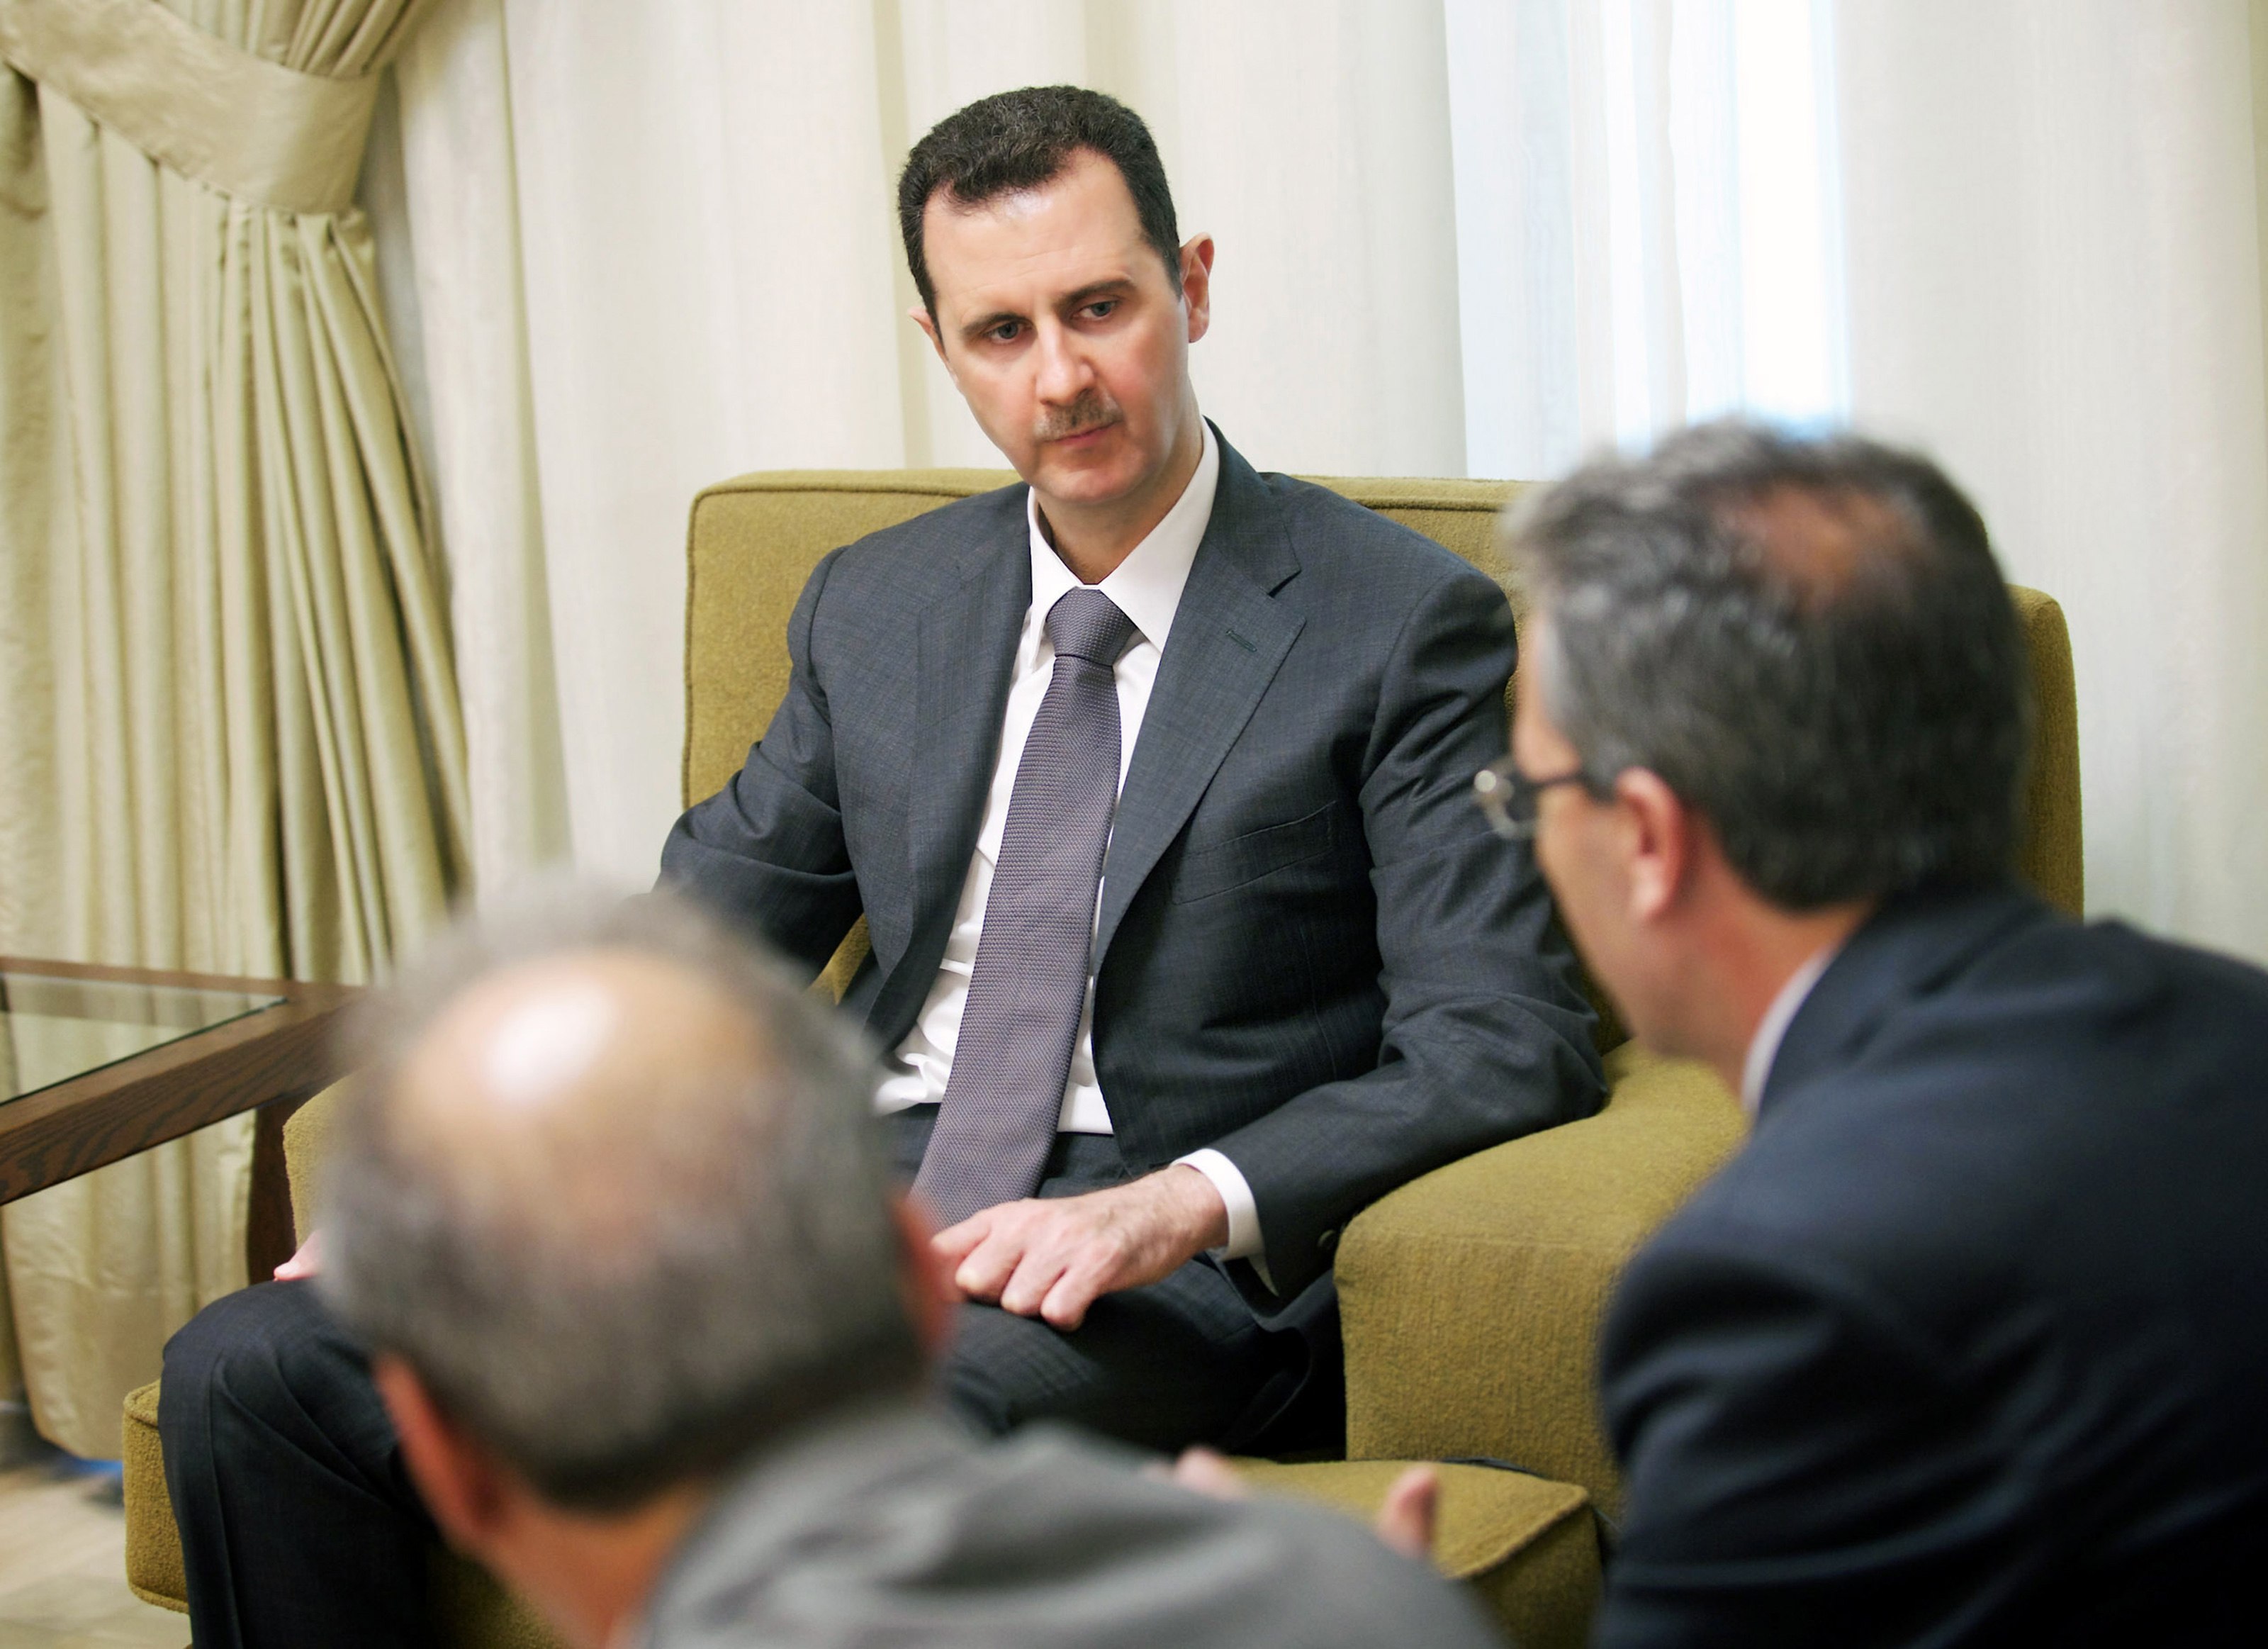 “Απειλούμαστε μόνο από στρατιωτική επέμβαση ξένων δυνάμεων”, δηλώνει ο Σύρος πρόεδρος